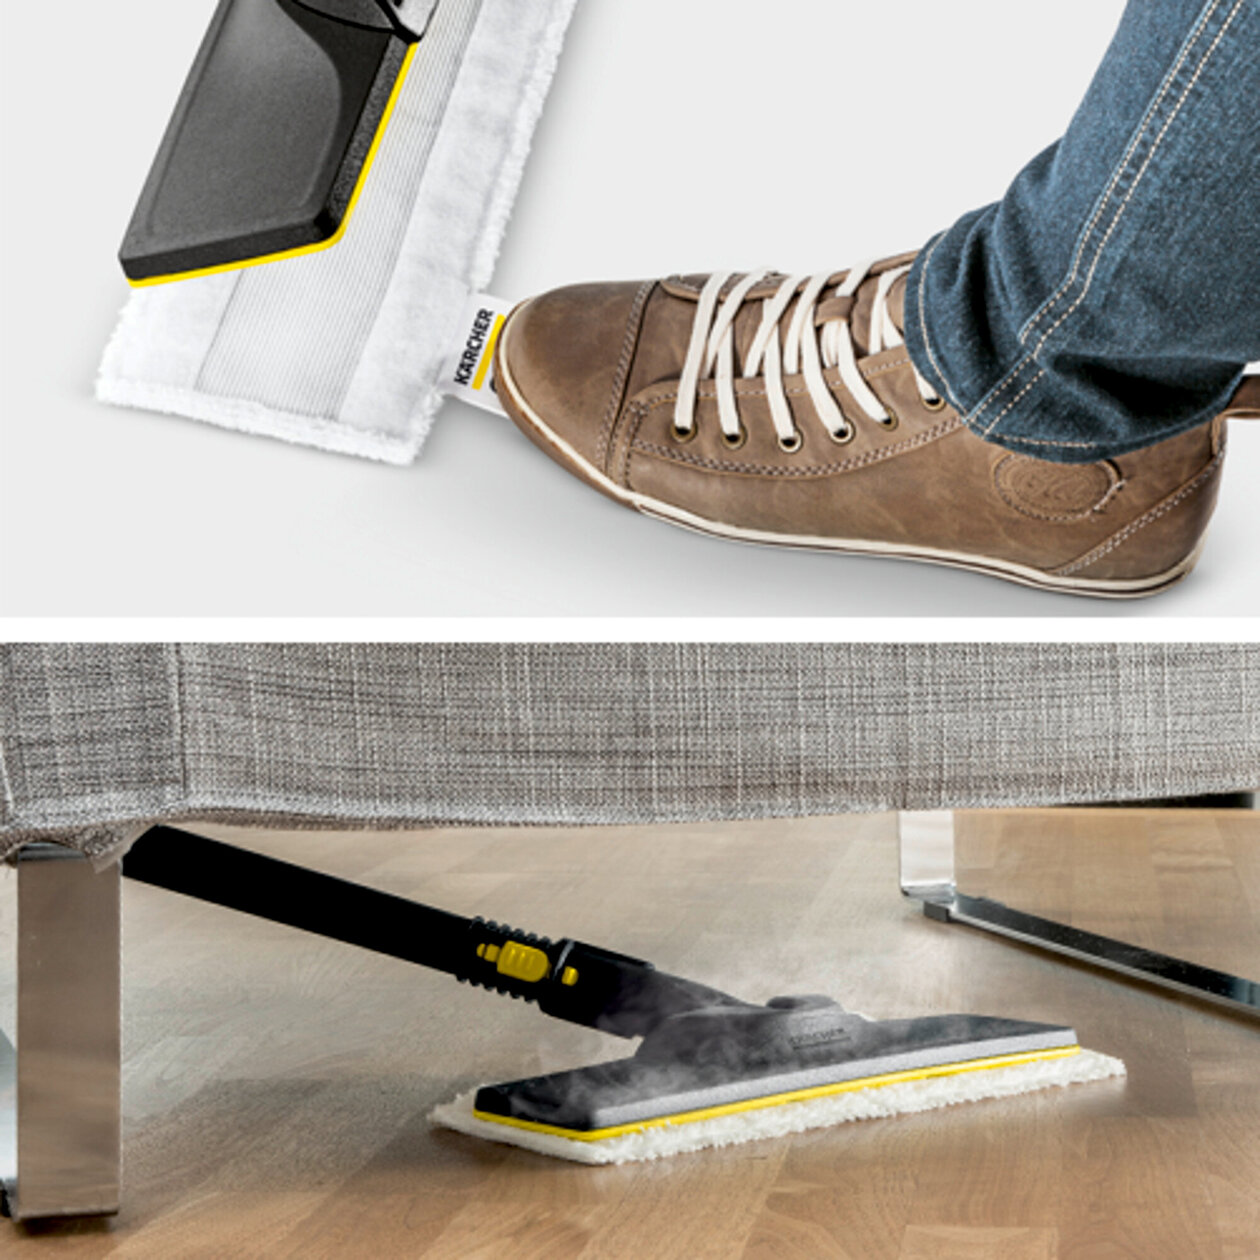  Parný čistič SC 5 EasyFix Iron Plug: Súprava na čistenie podlahy EasyFix s flexibilným kĺbom na podlahovej hubici a pohodlným suchým zipsom na upevnenie utierky na podlahu